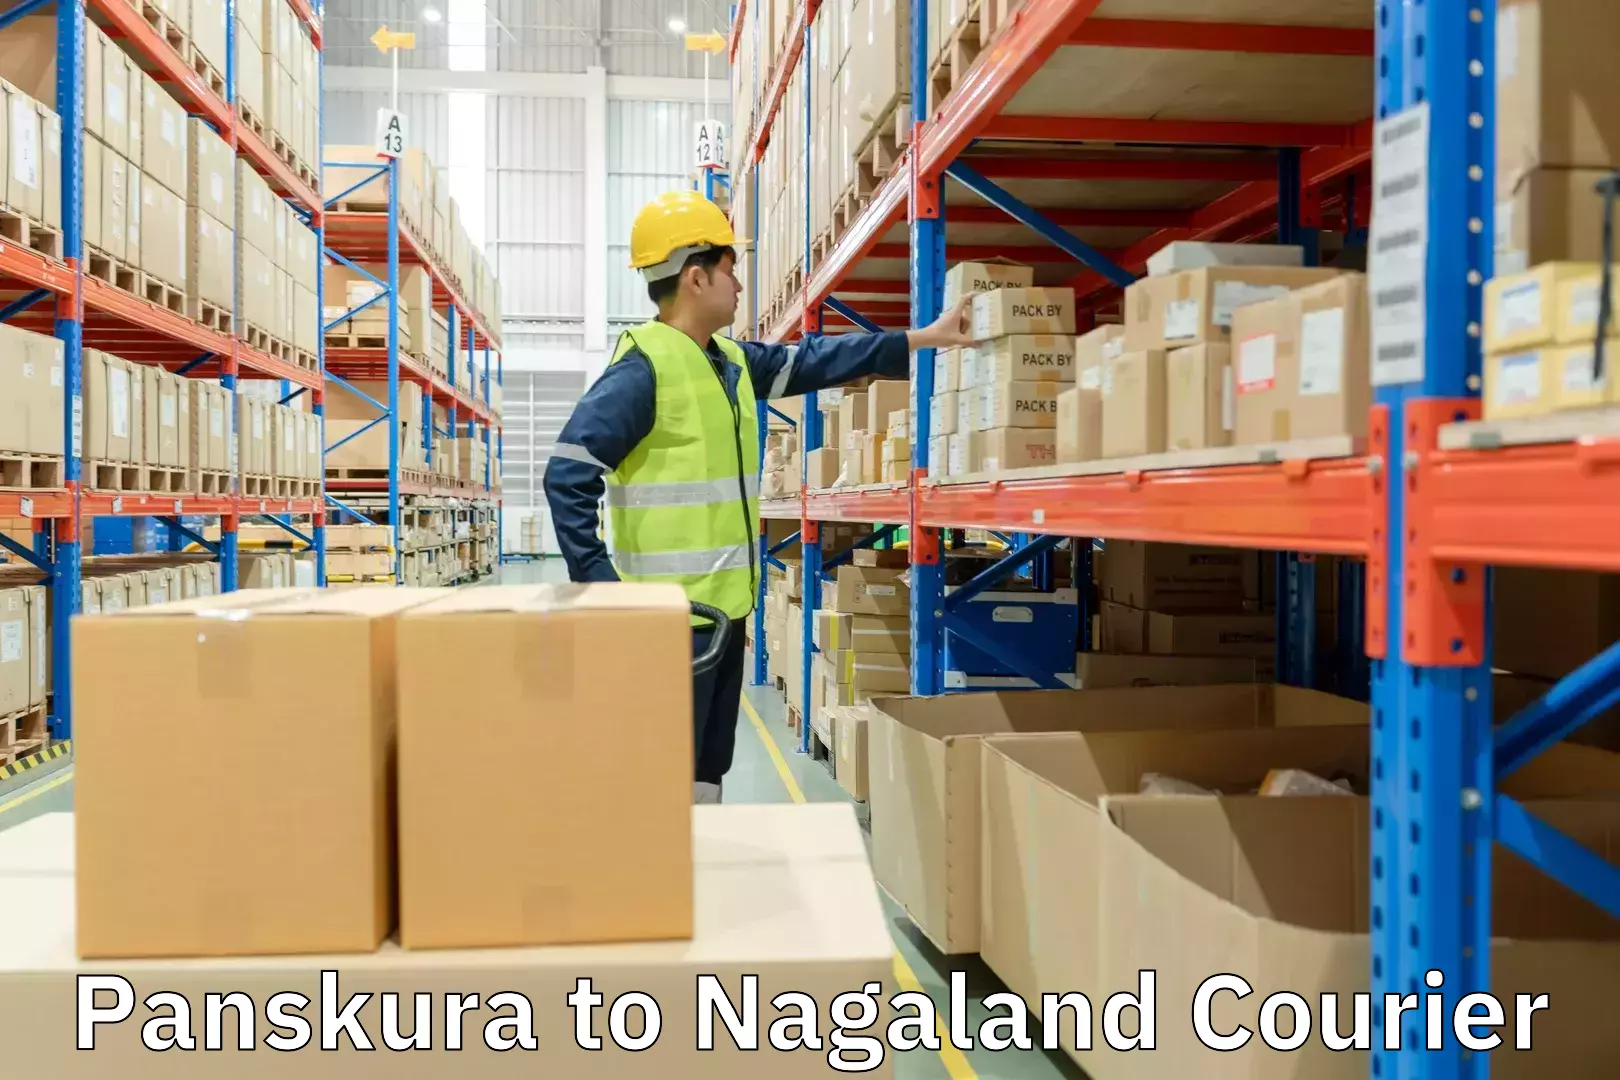 Efficient order fulfillment in Panskura to Nagaland